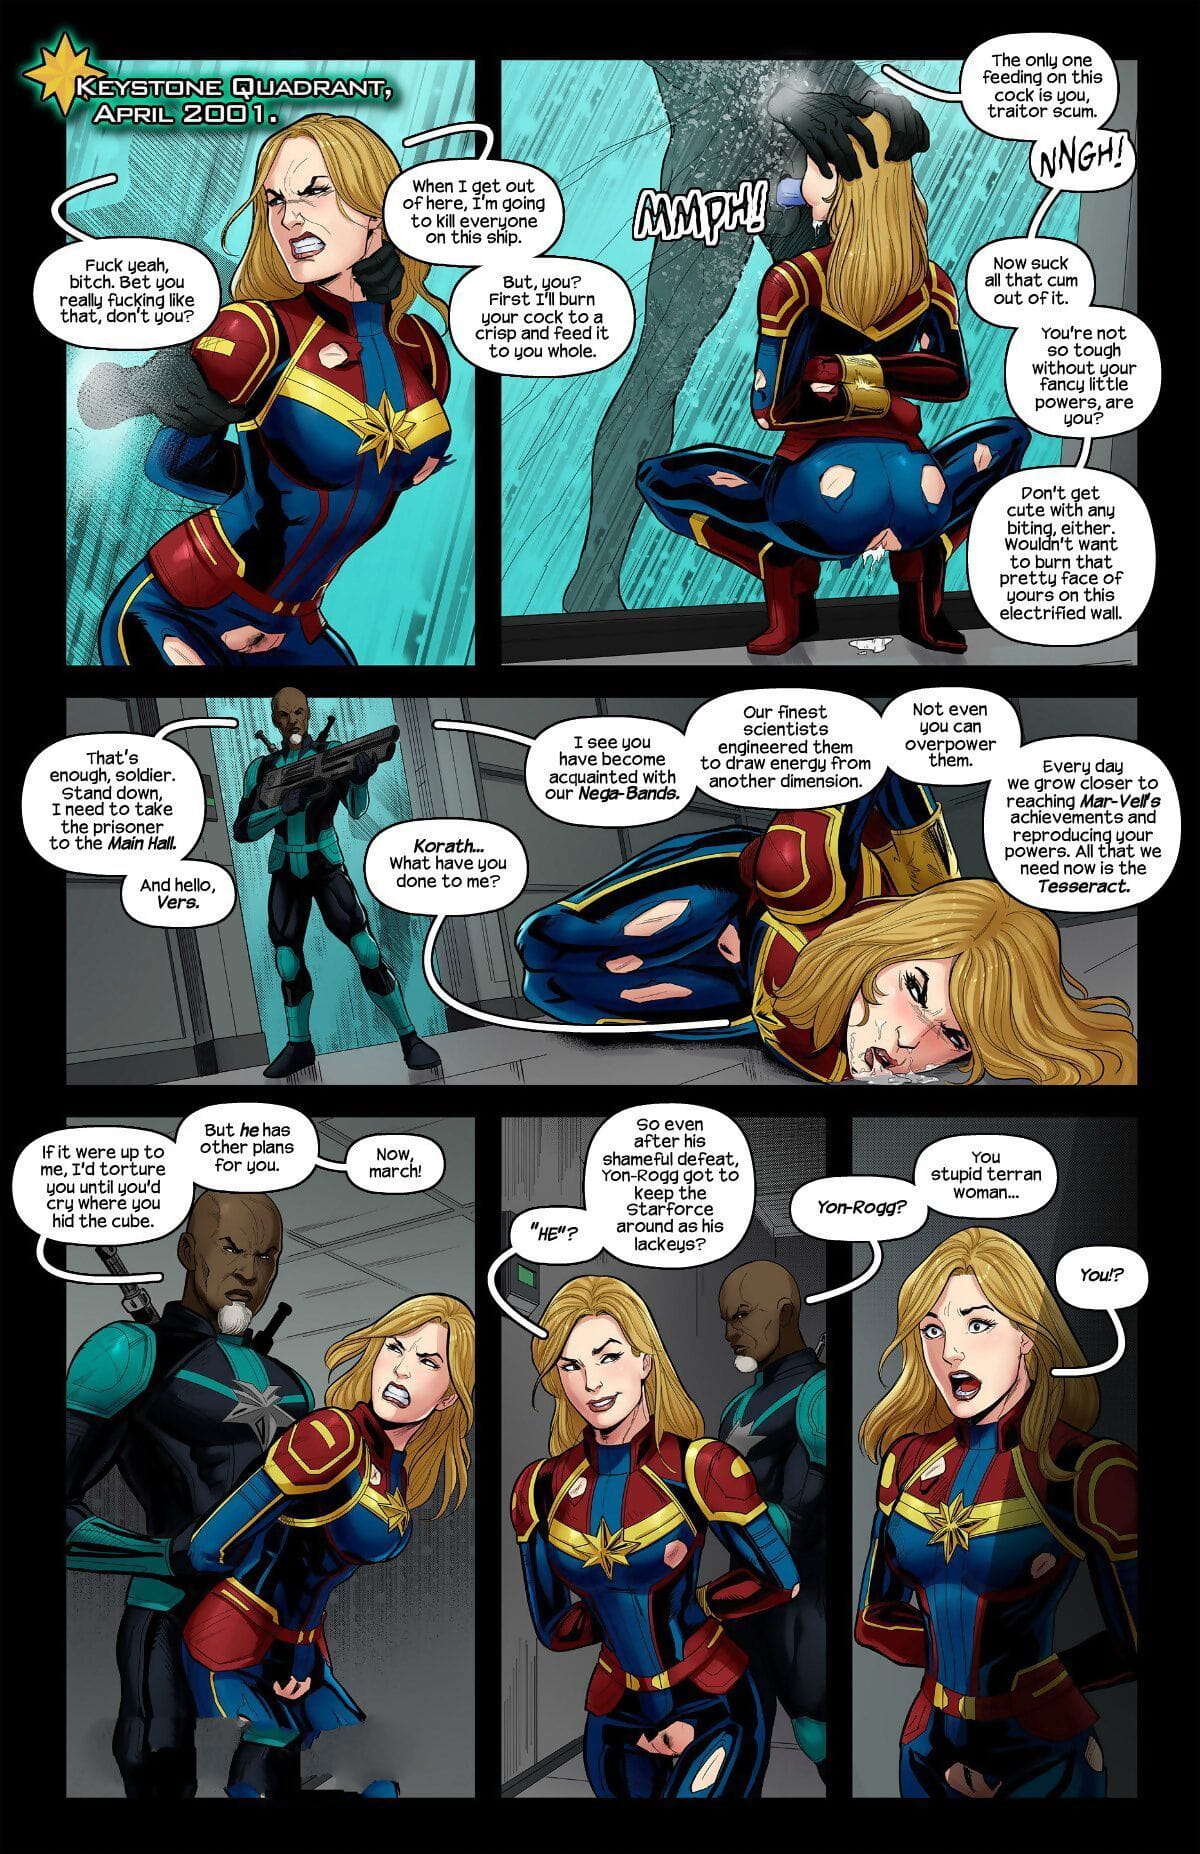 Tracy scops el capitán Marvel acusado page 1